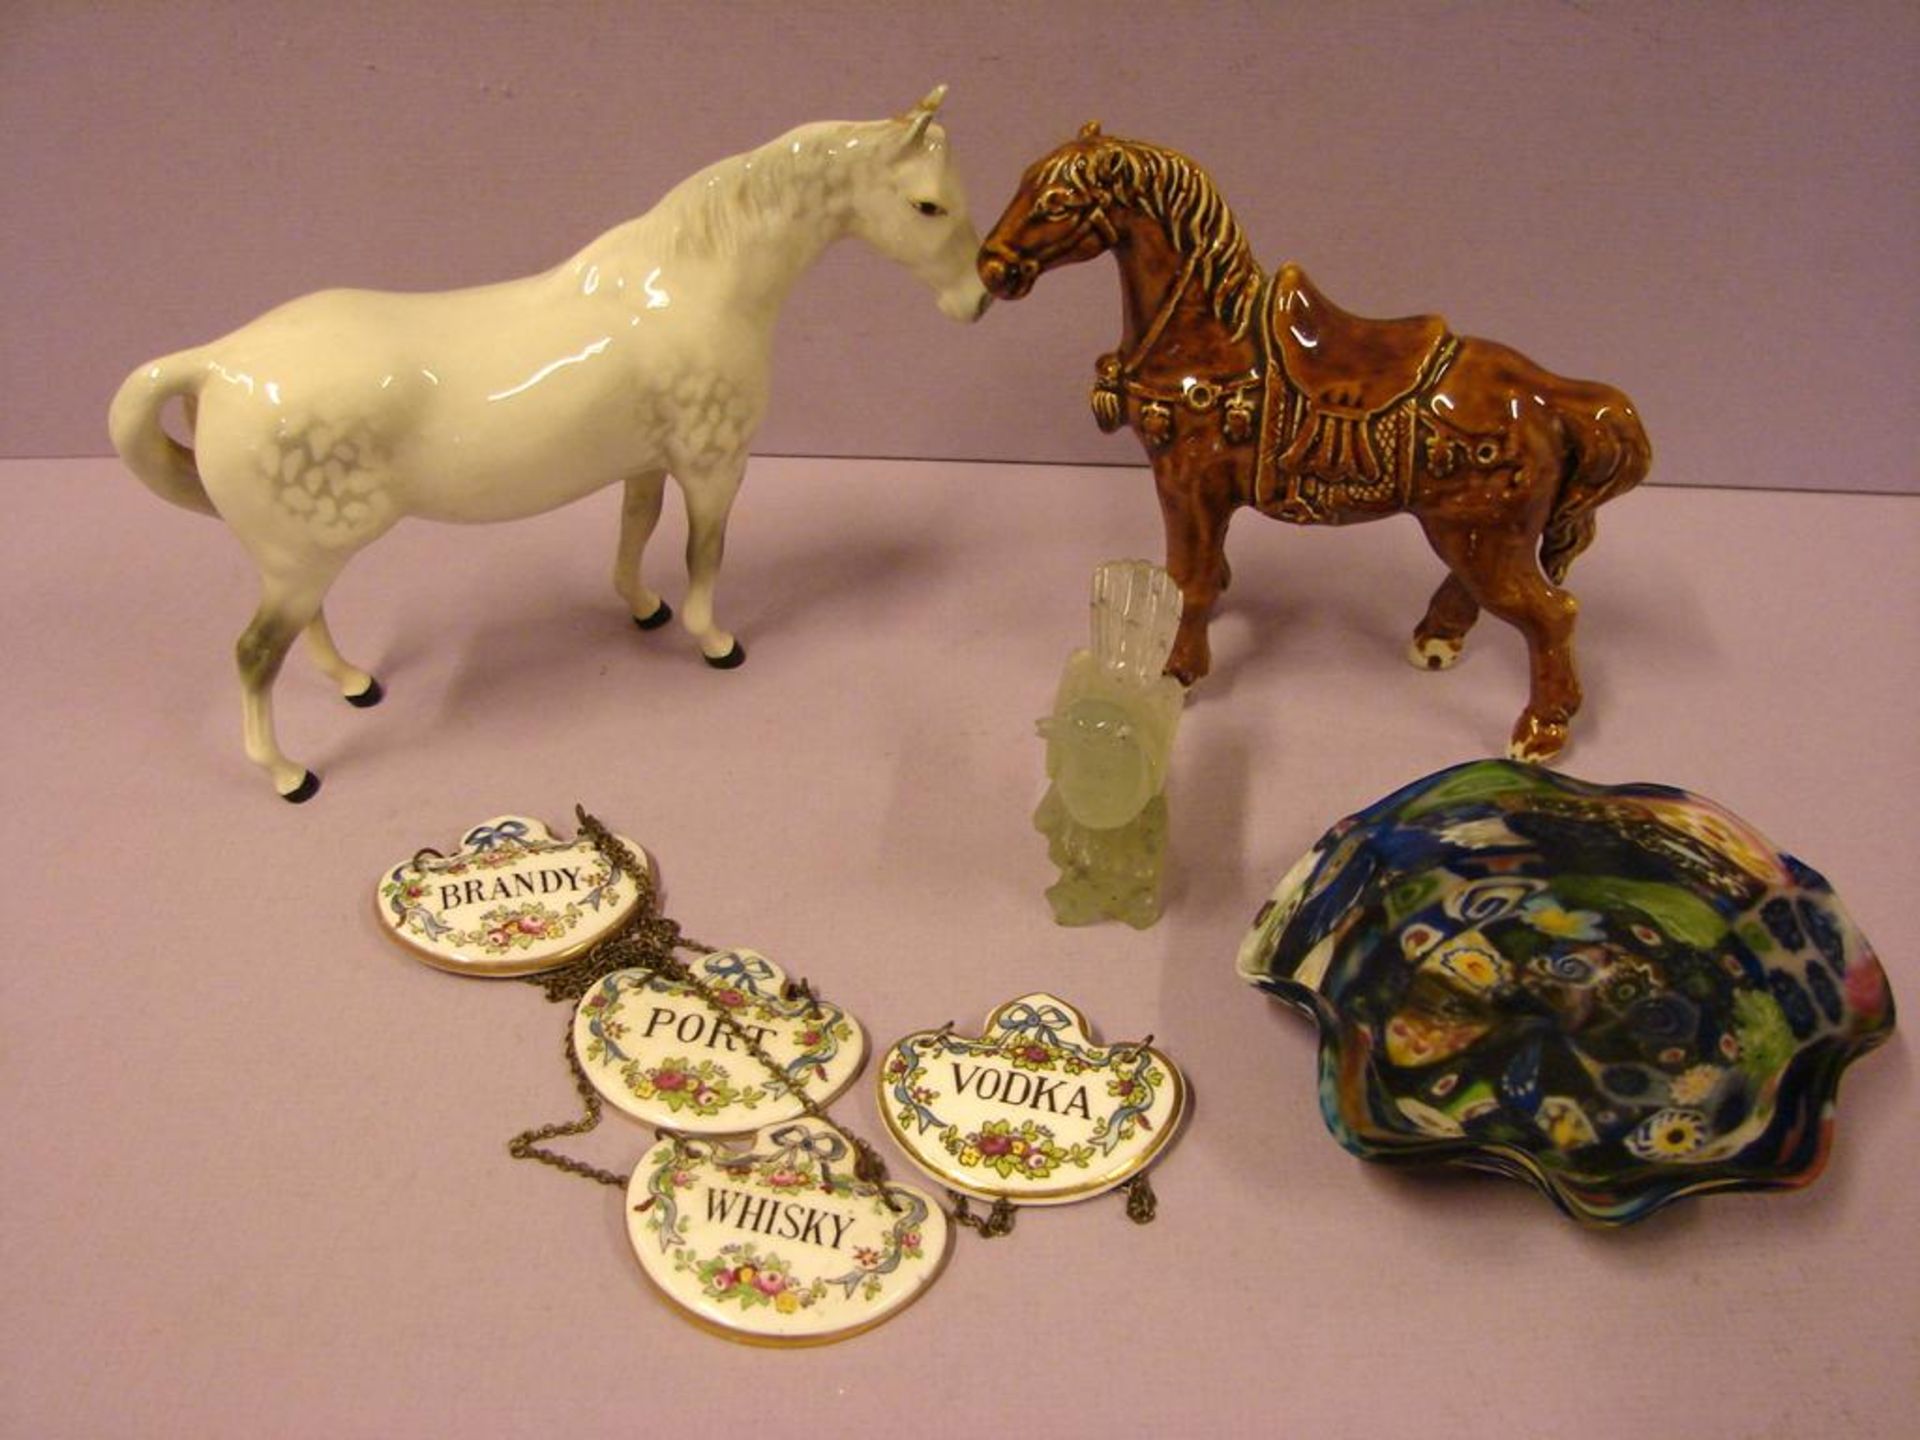 Konvolut Porzellan, Keramik, Glas (2 Pferde, Schale, etc.)